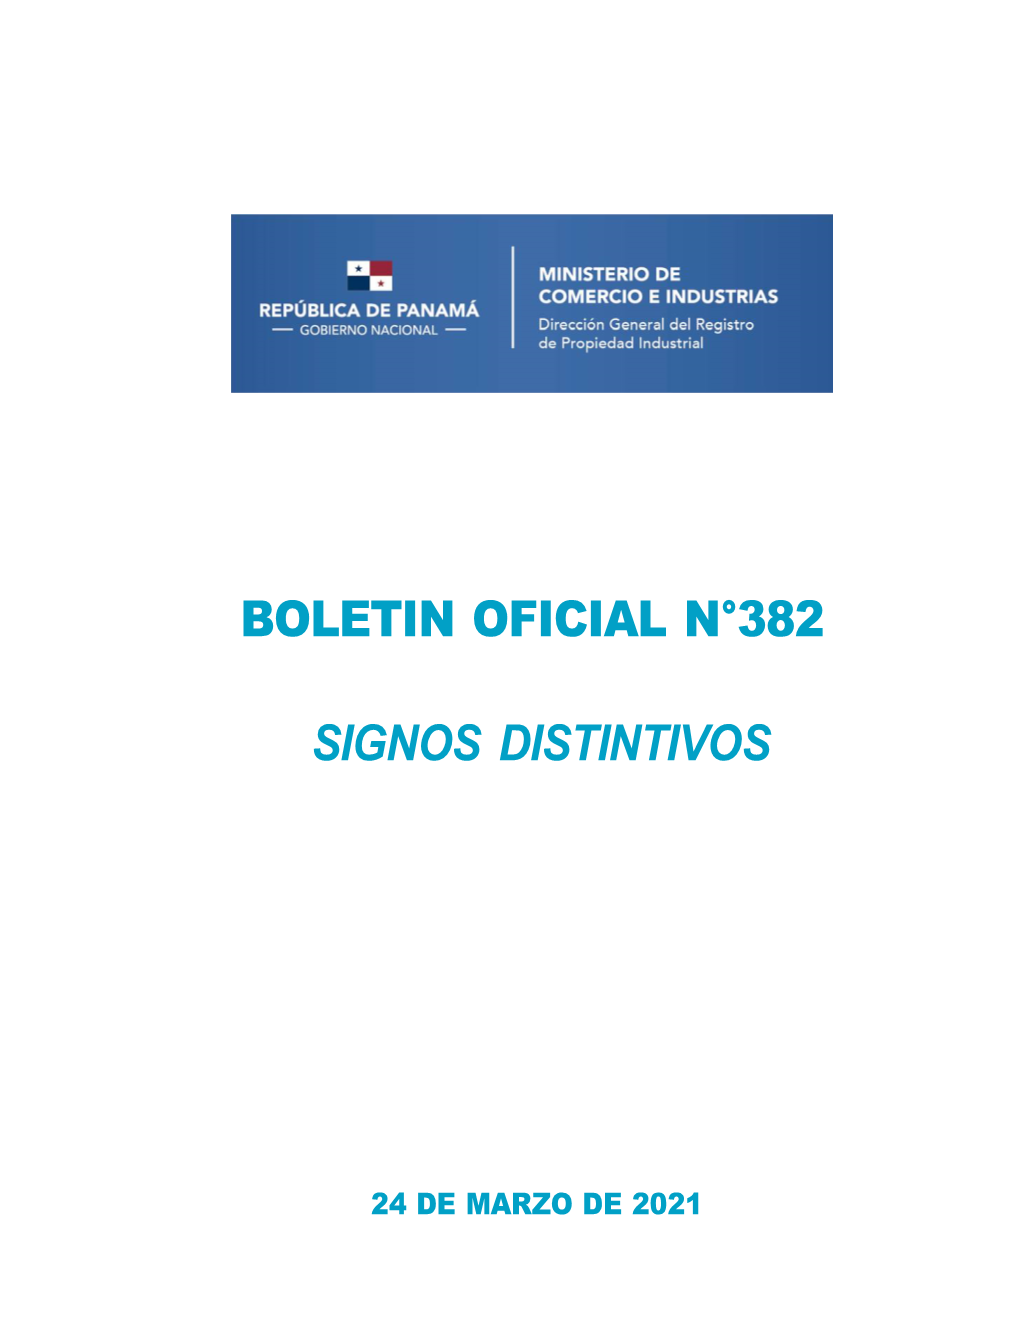 Boletin Oficial N°382 Signos Distintivos